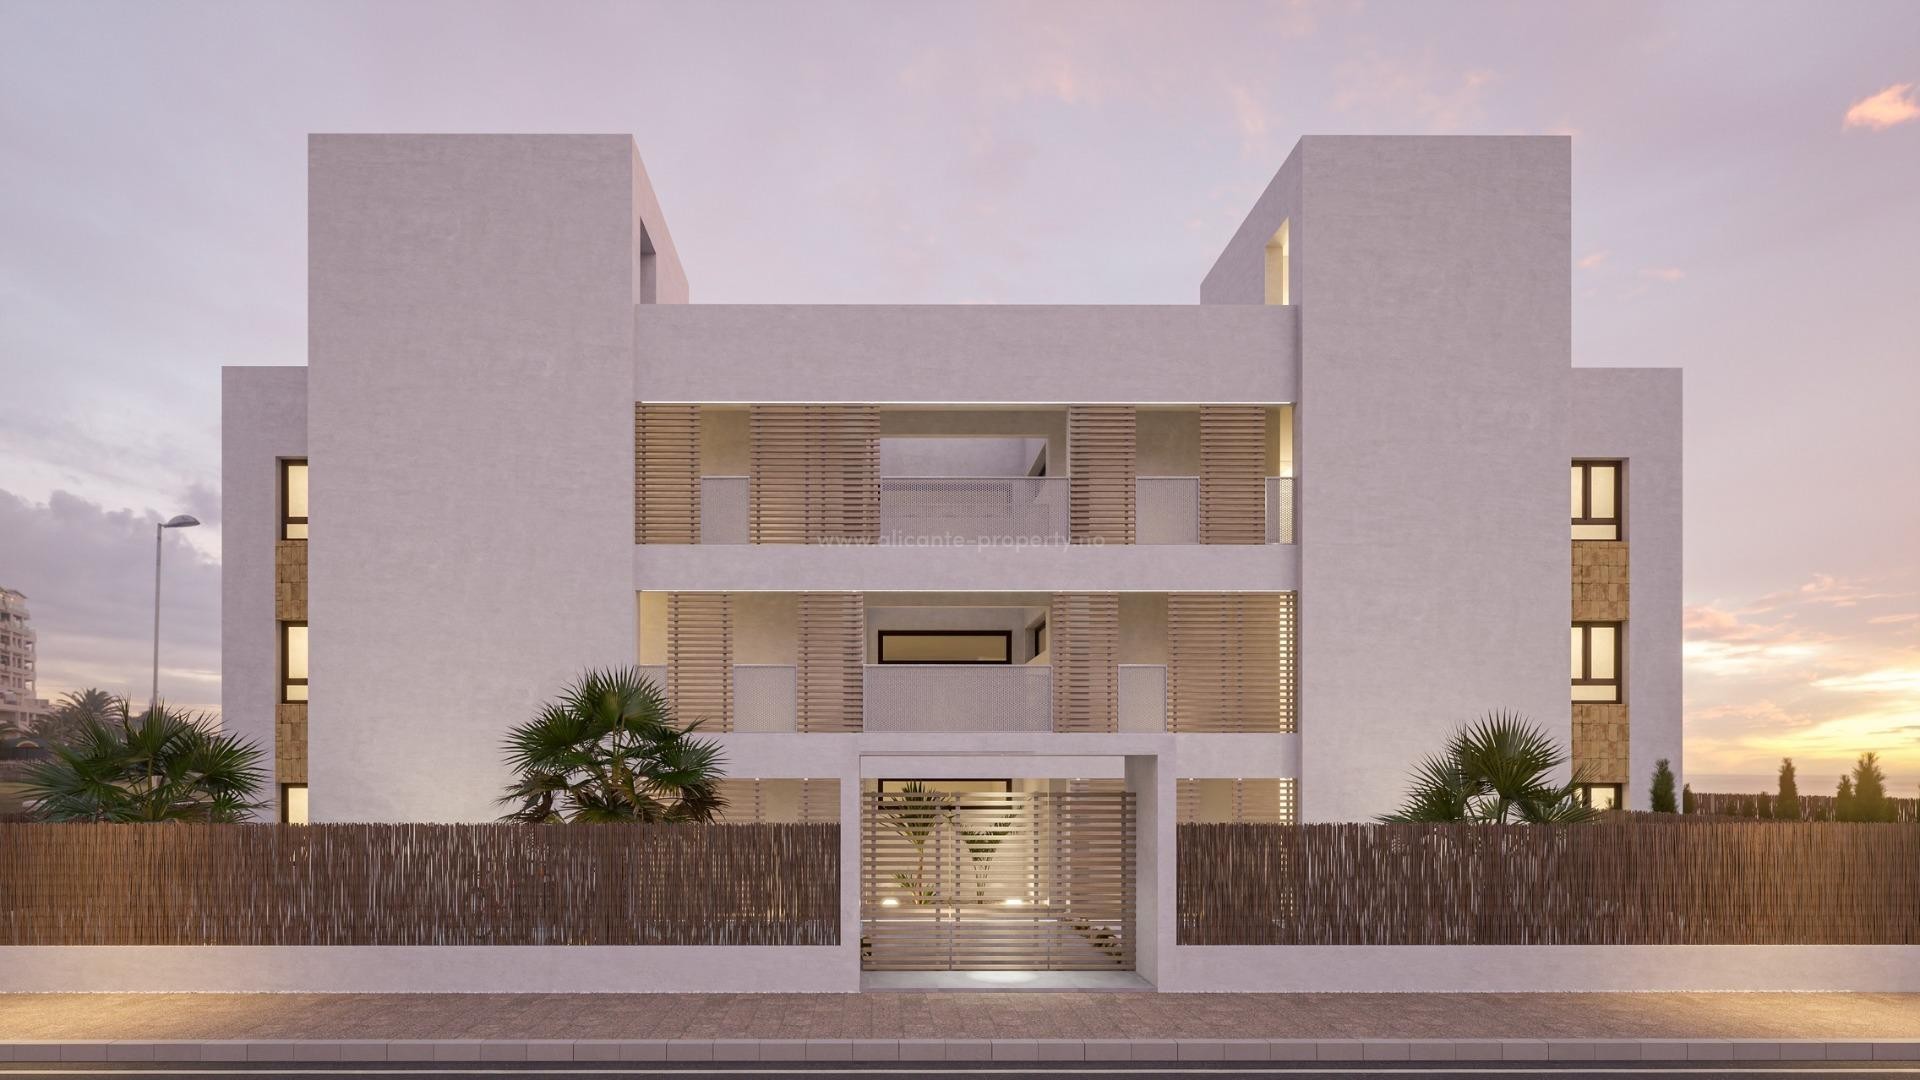 Nybygget moderne boligkompleks i Orihuela Costa, 2 soverom, 2 bad, felles basseng og hage. Noen leiligheter med romslige solterrasse